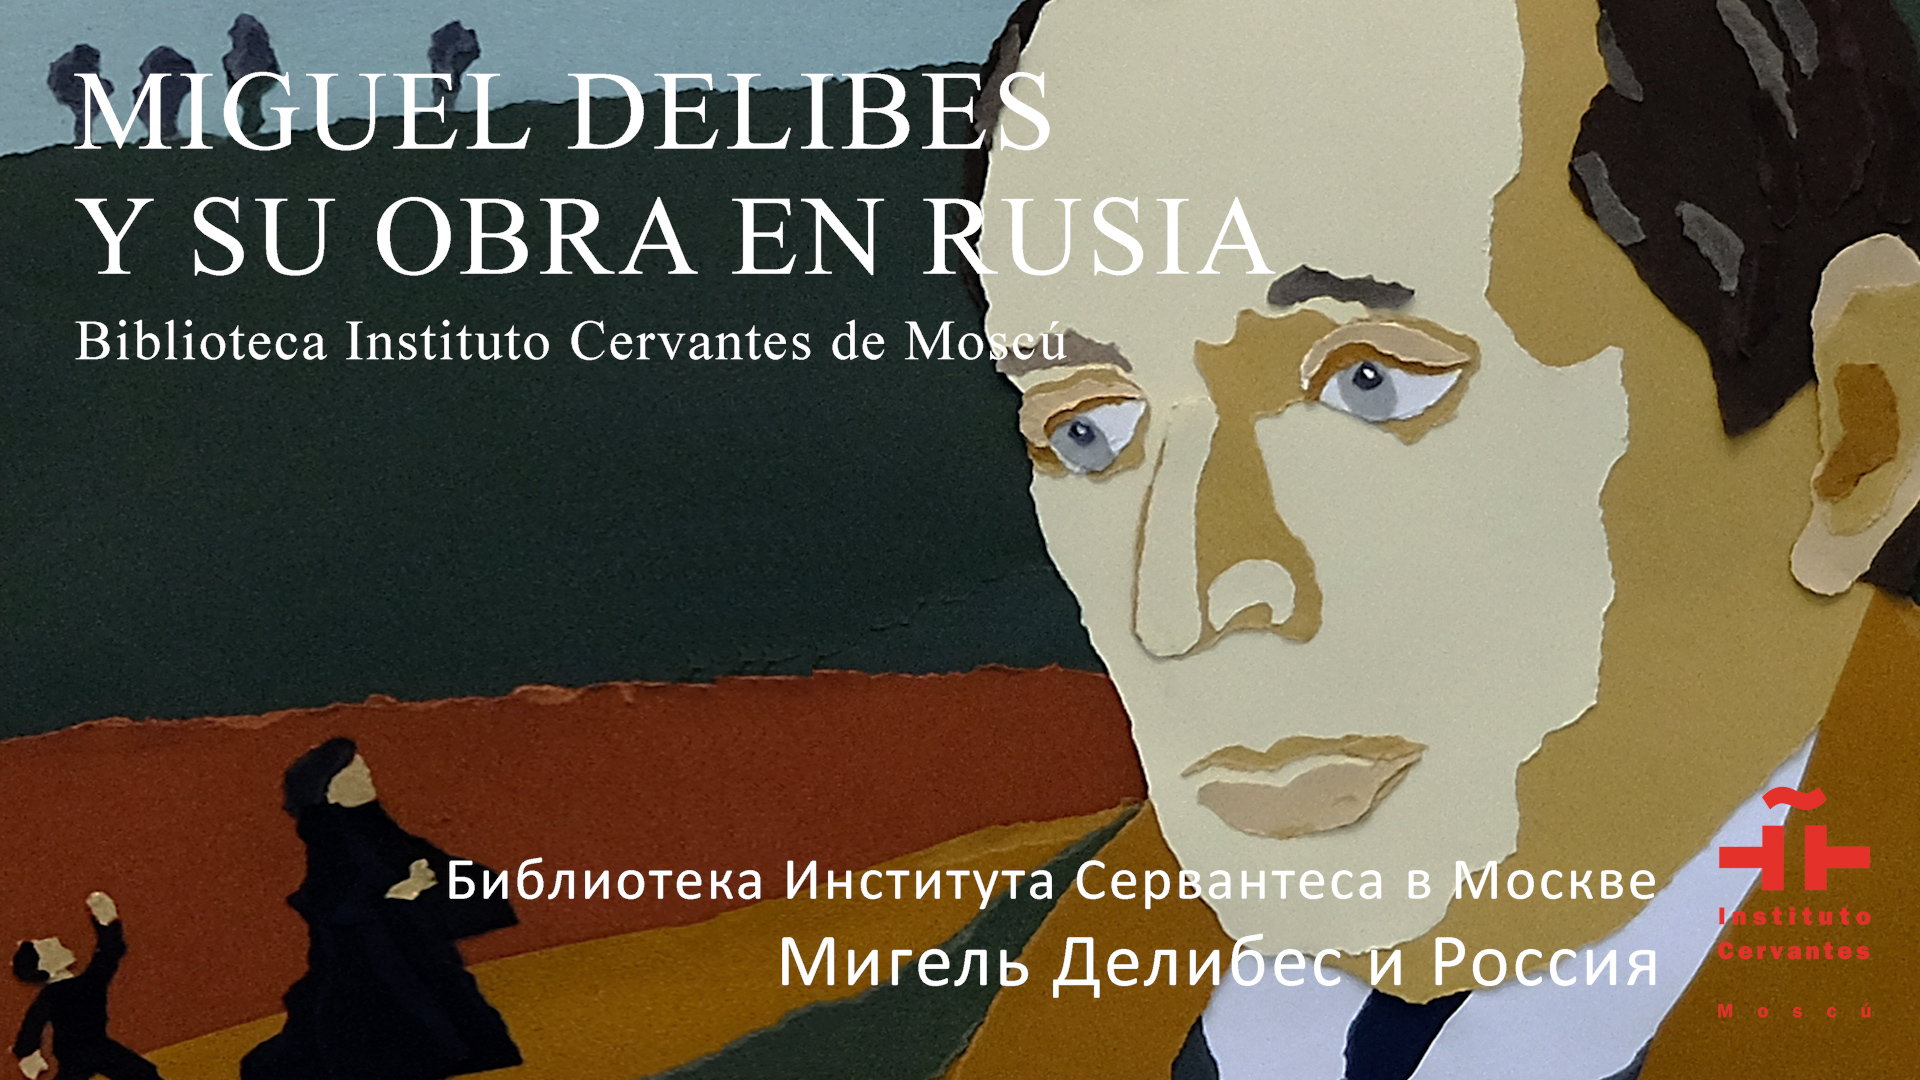 Мигель Делибес и Россия